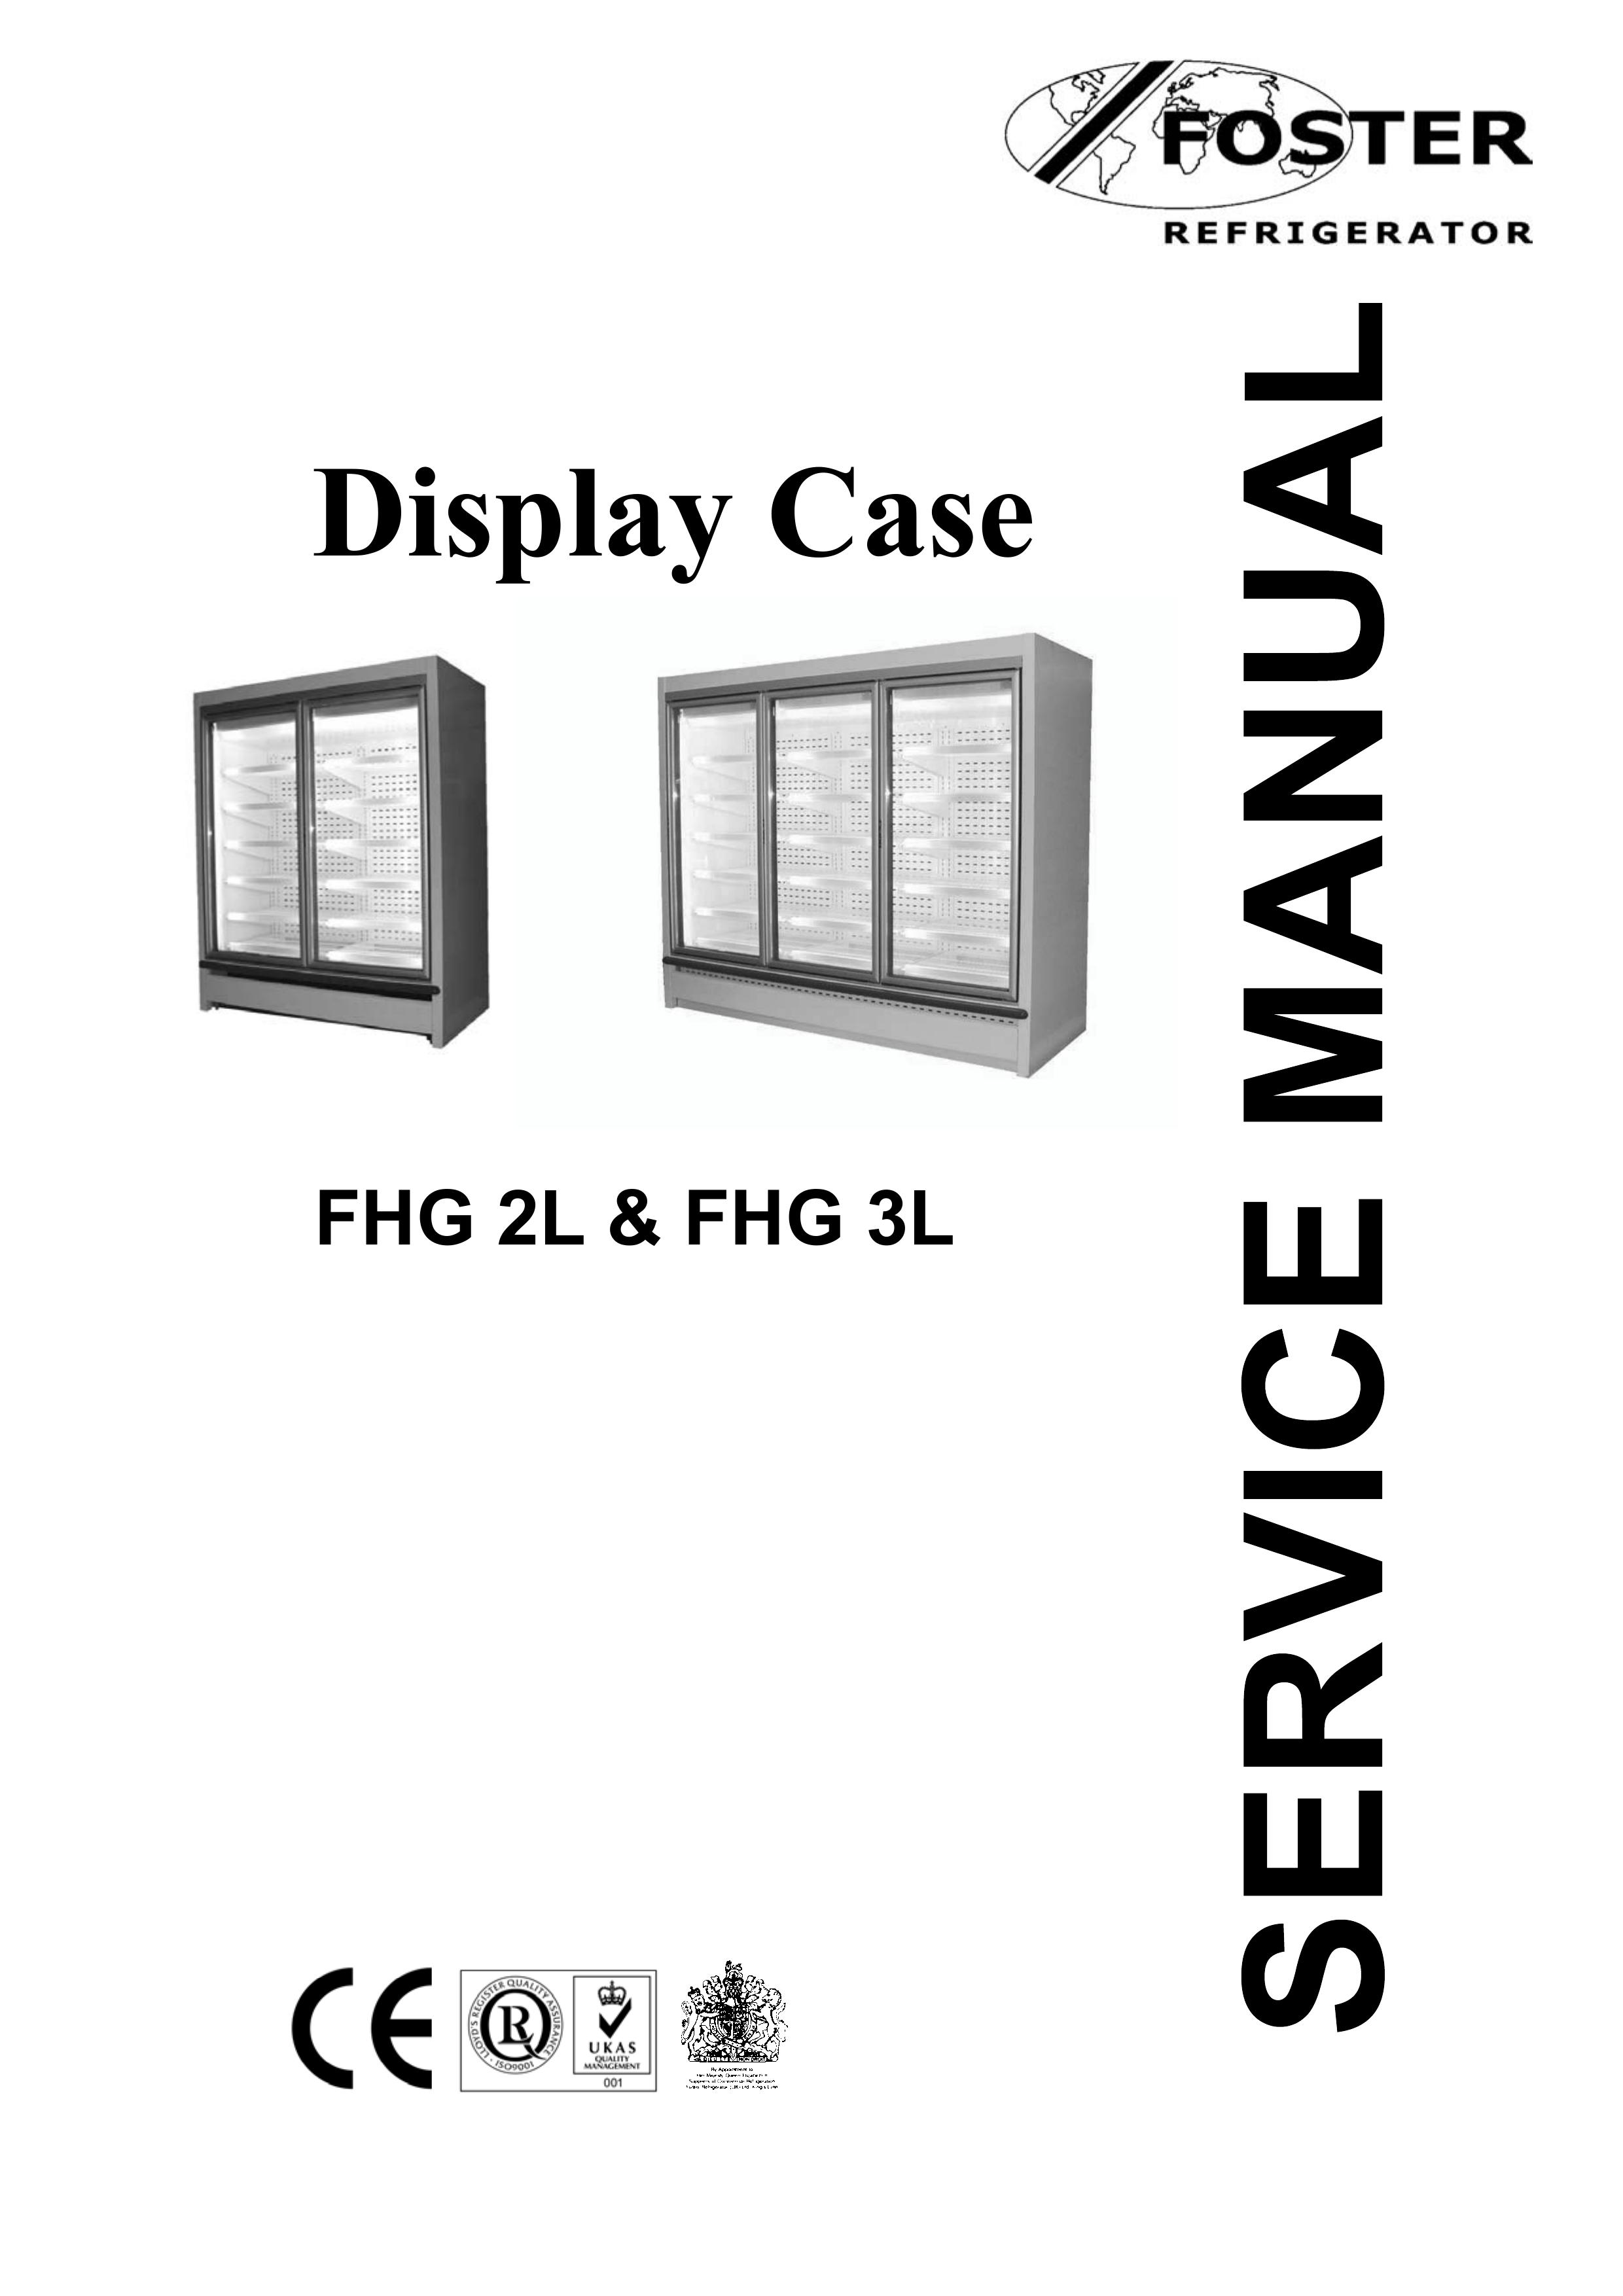 Foster FHG 2L Refrigerator User Manual